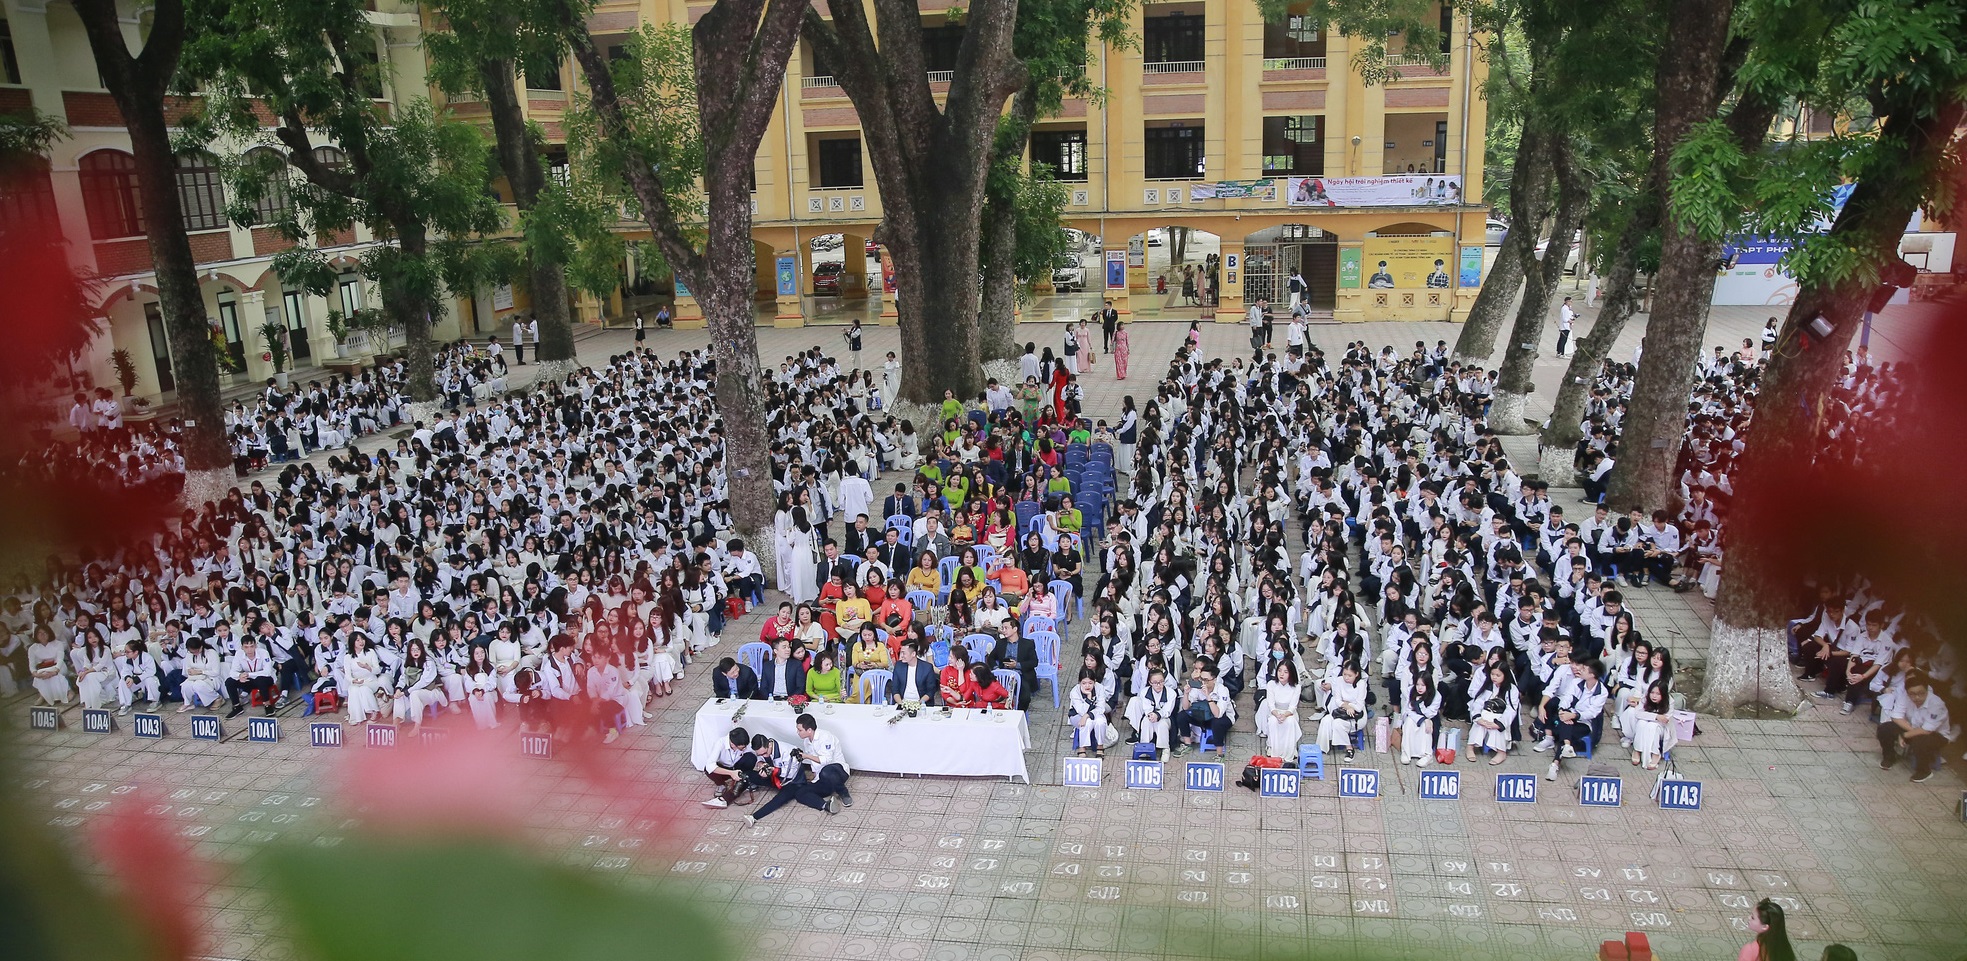 Trường THPT công lập này đình đám nhất nhì Hà Nội nhưng học phí lại “dễ thở” - Ảnh 2.